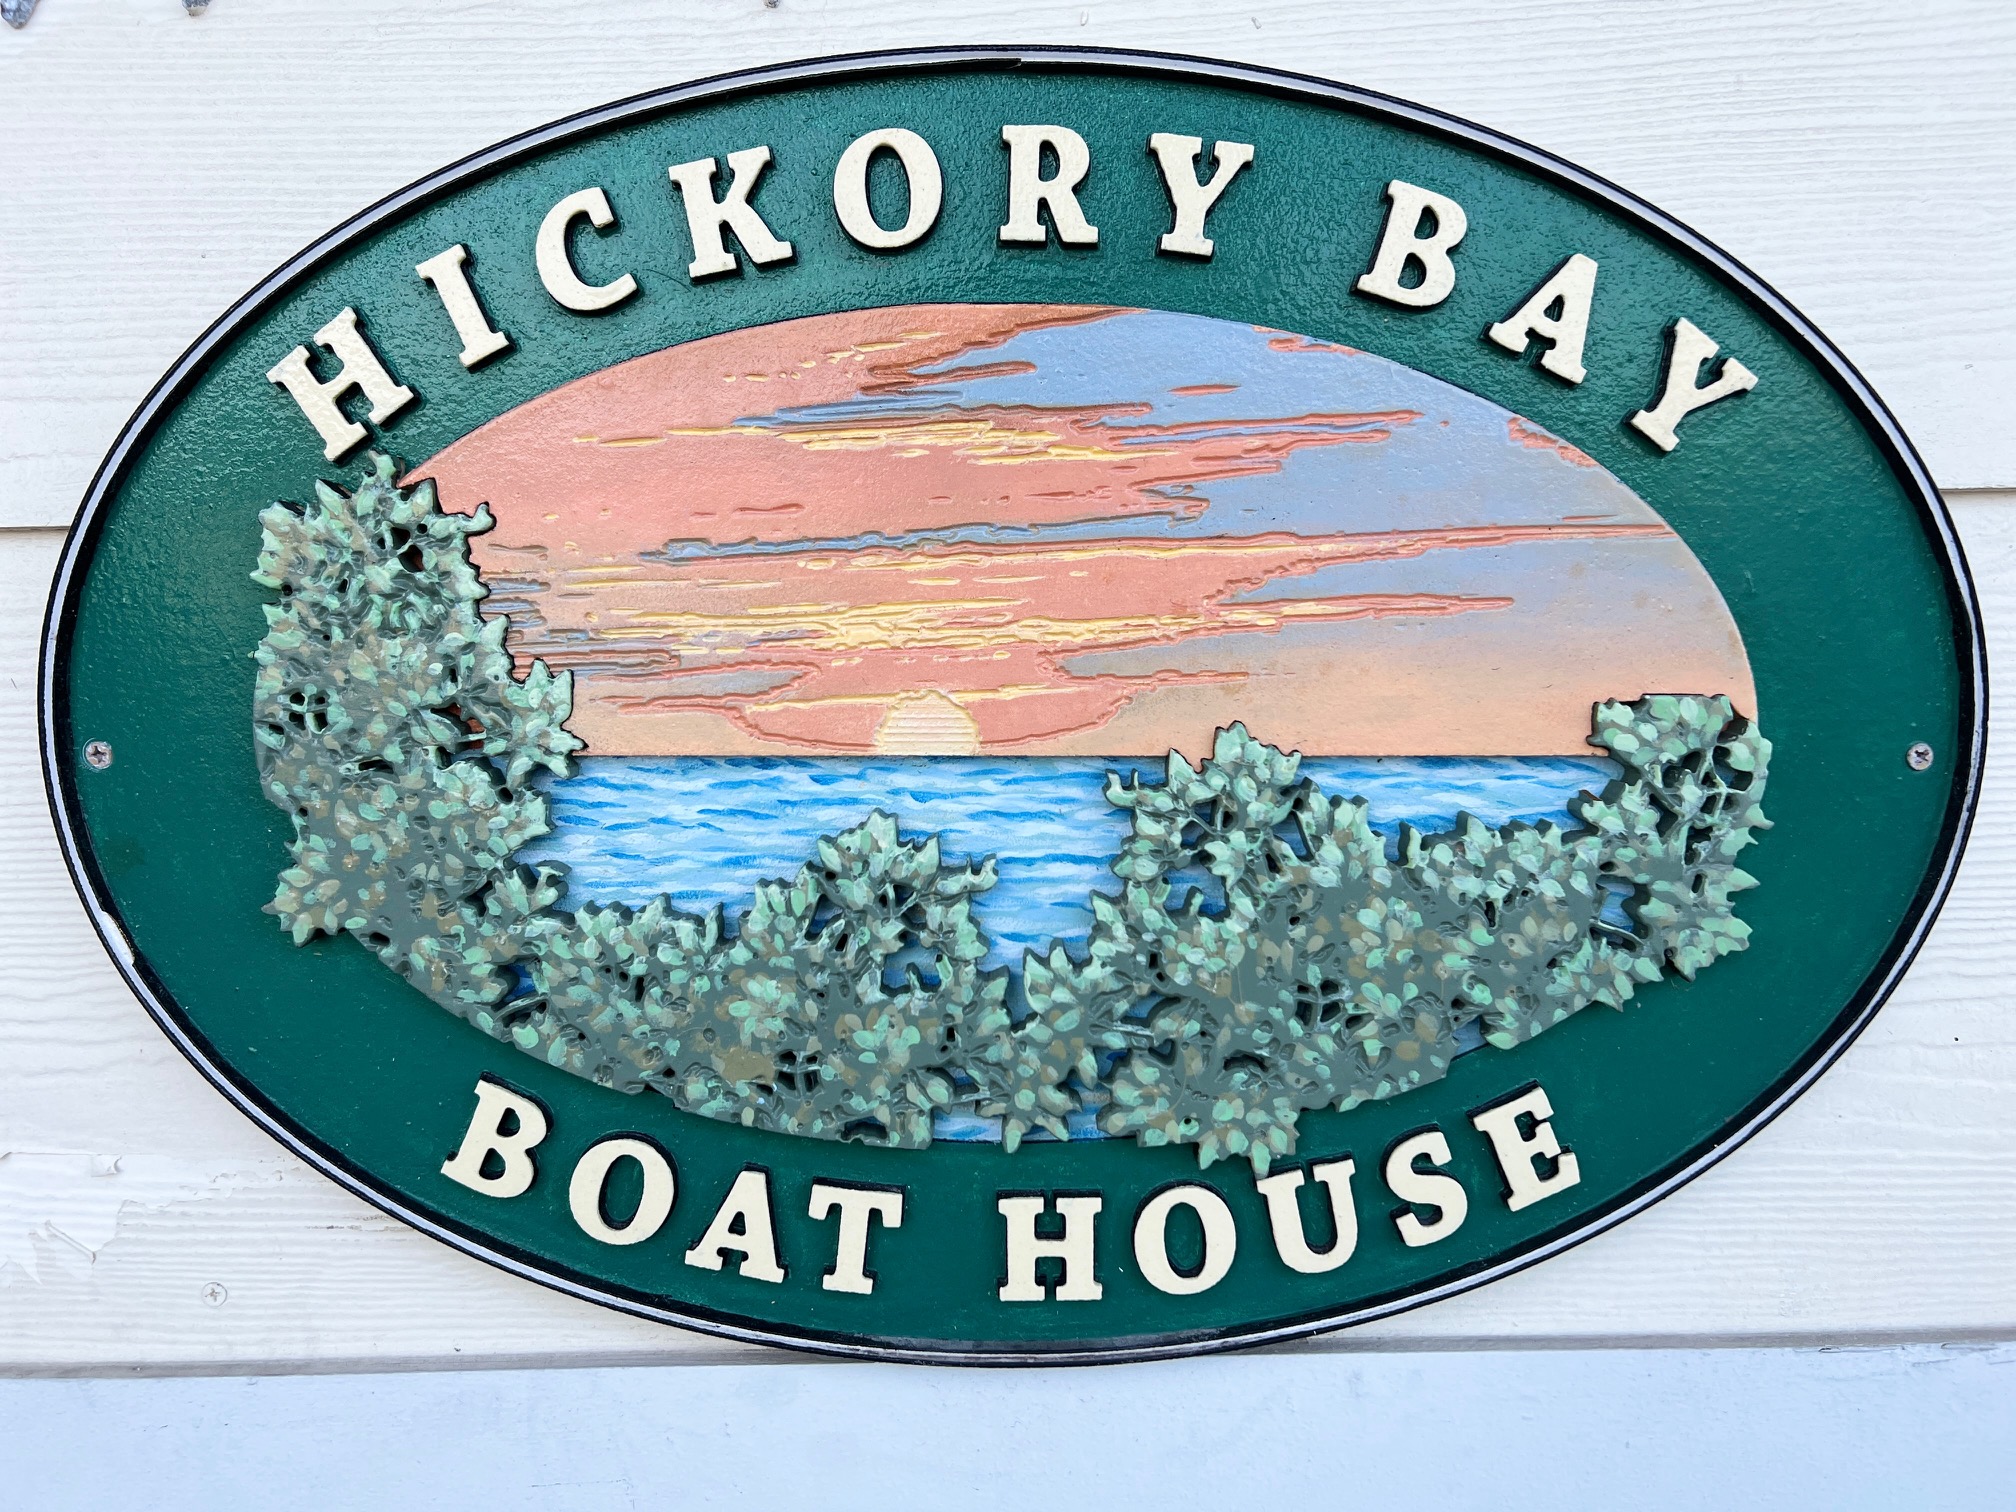 Hickory Bay